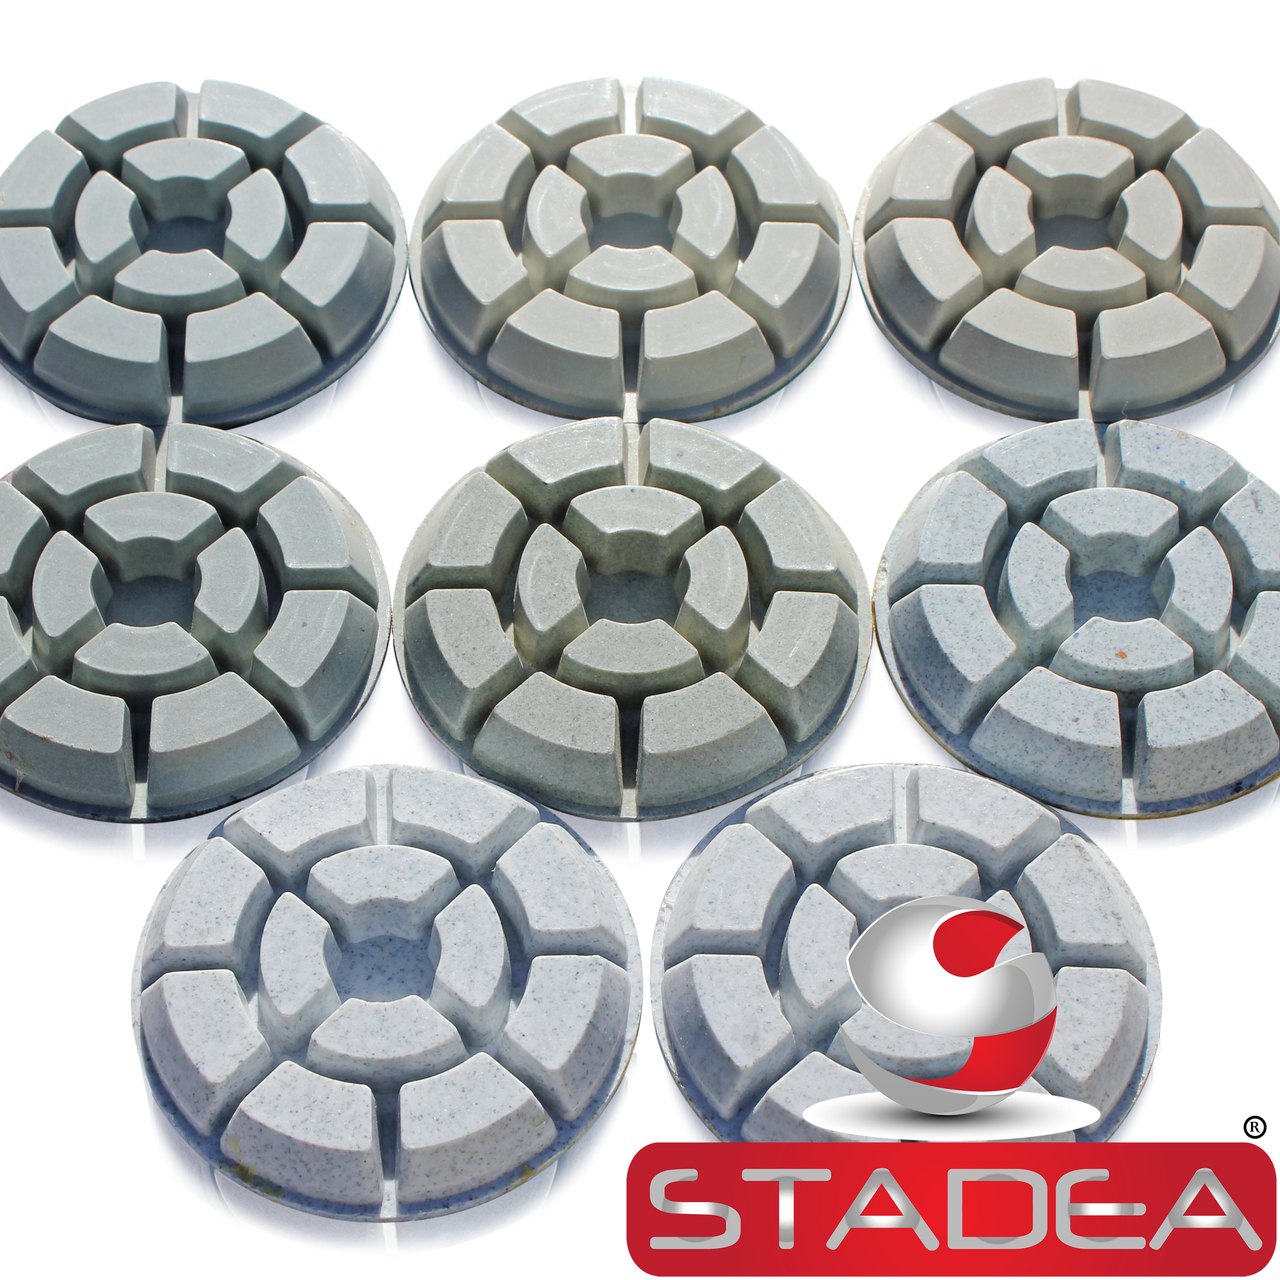 Polishers Shop N Save Diamond Tools 4 STADEA Concrete Diamond Polishing Pads Set for diamond concrete polishing Concrete Sanding Wet Grinders